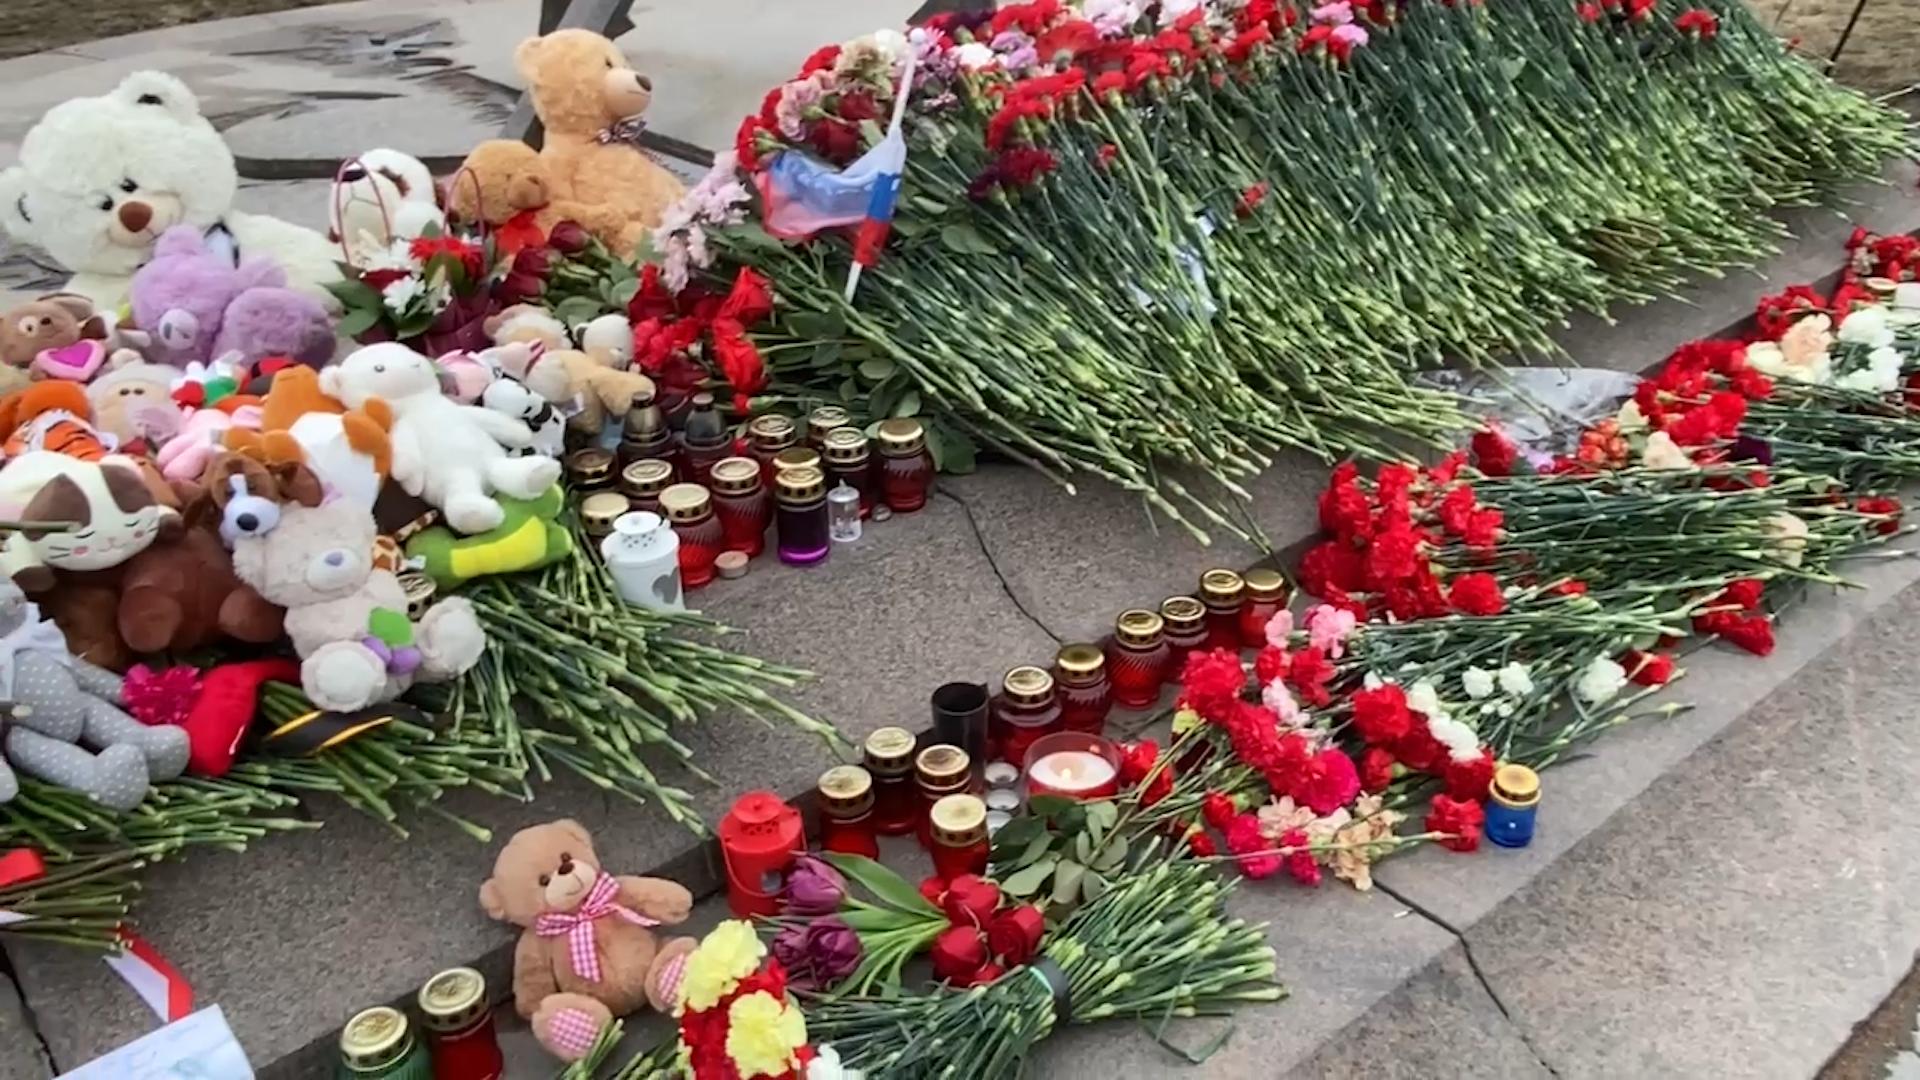 Цветок крокус в память о жертвах теракта